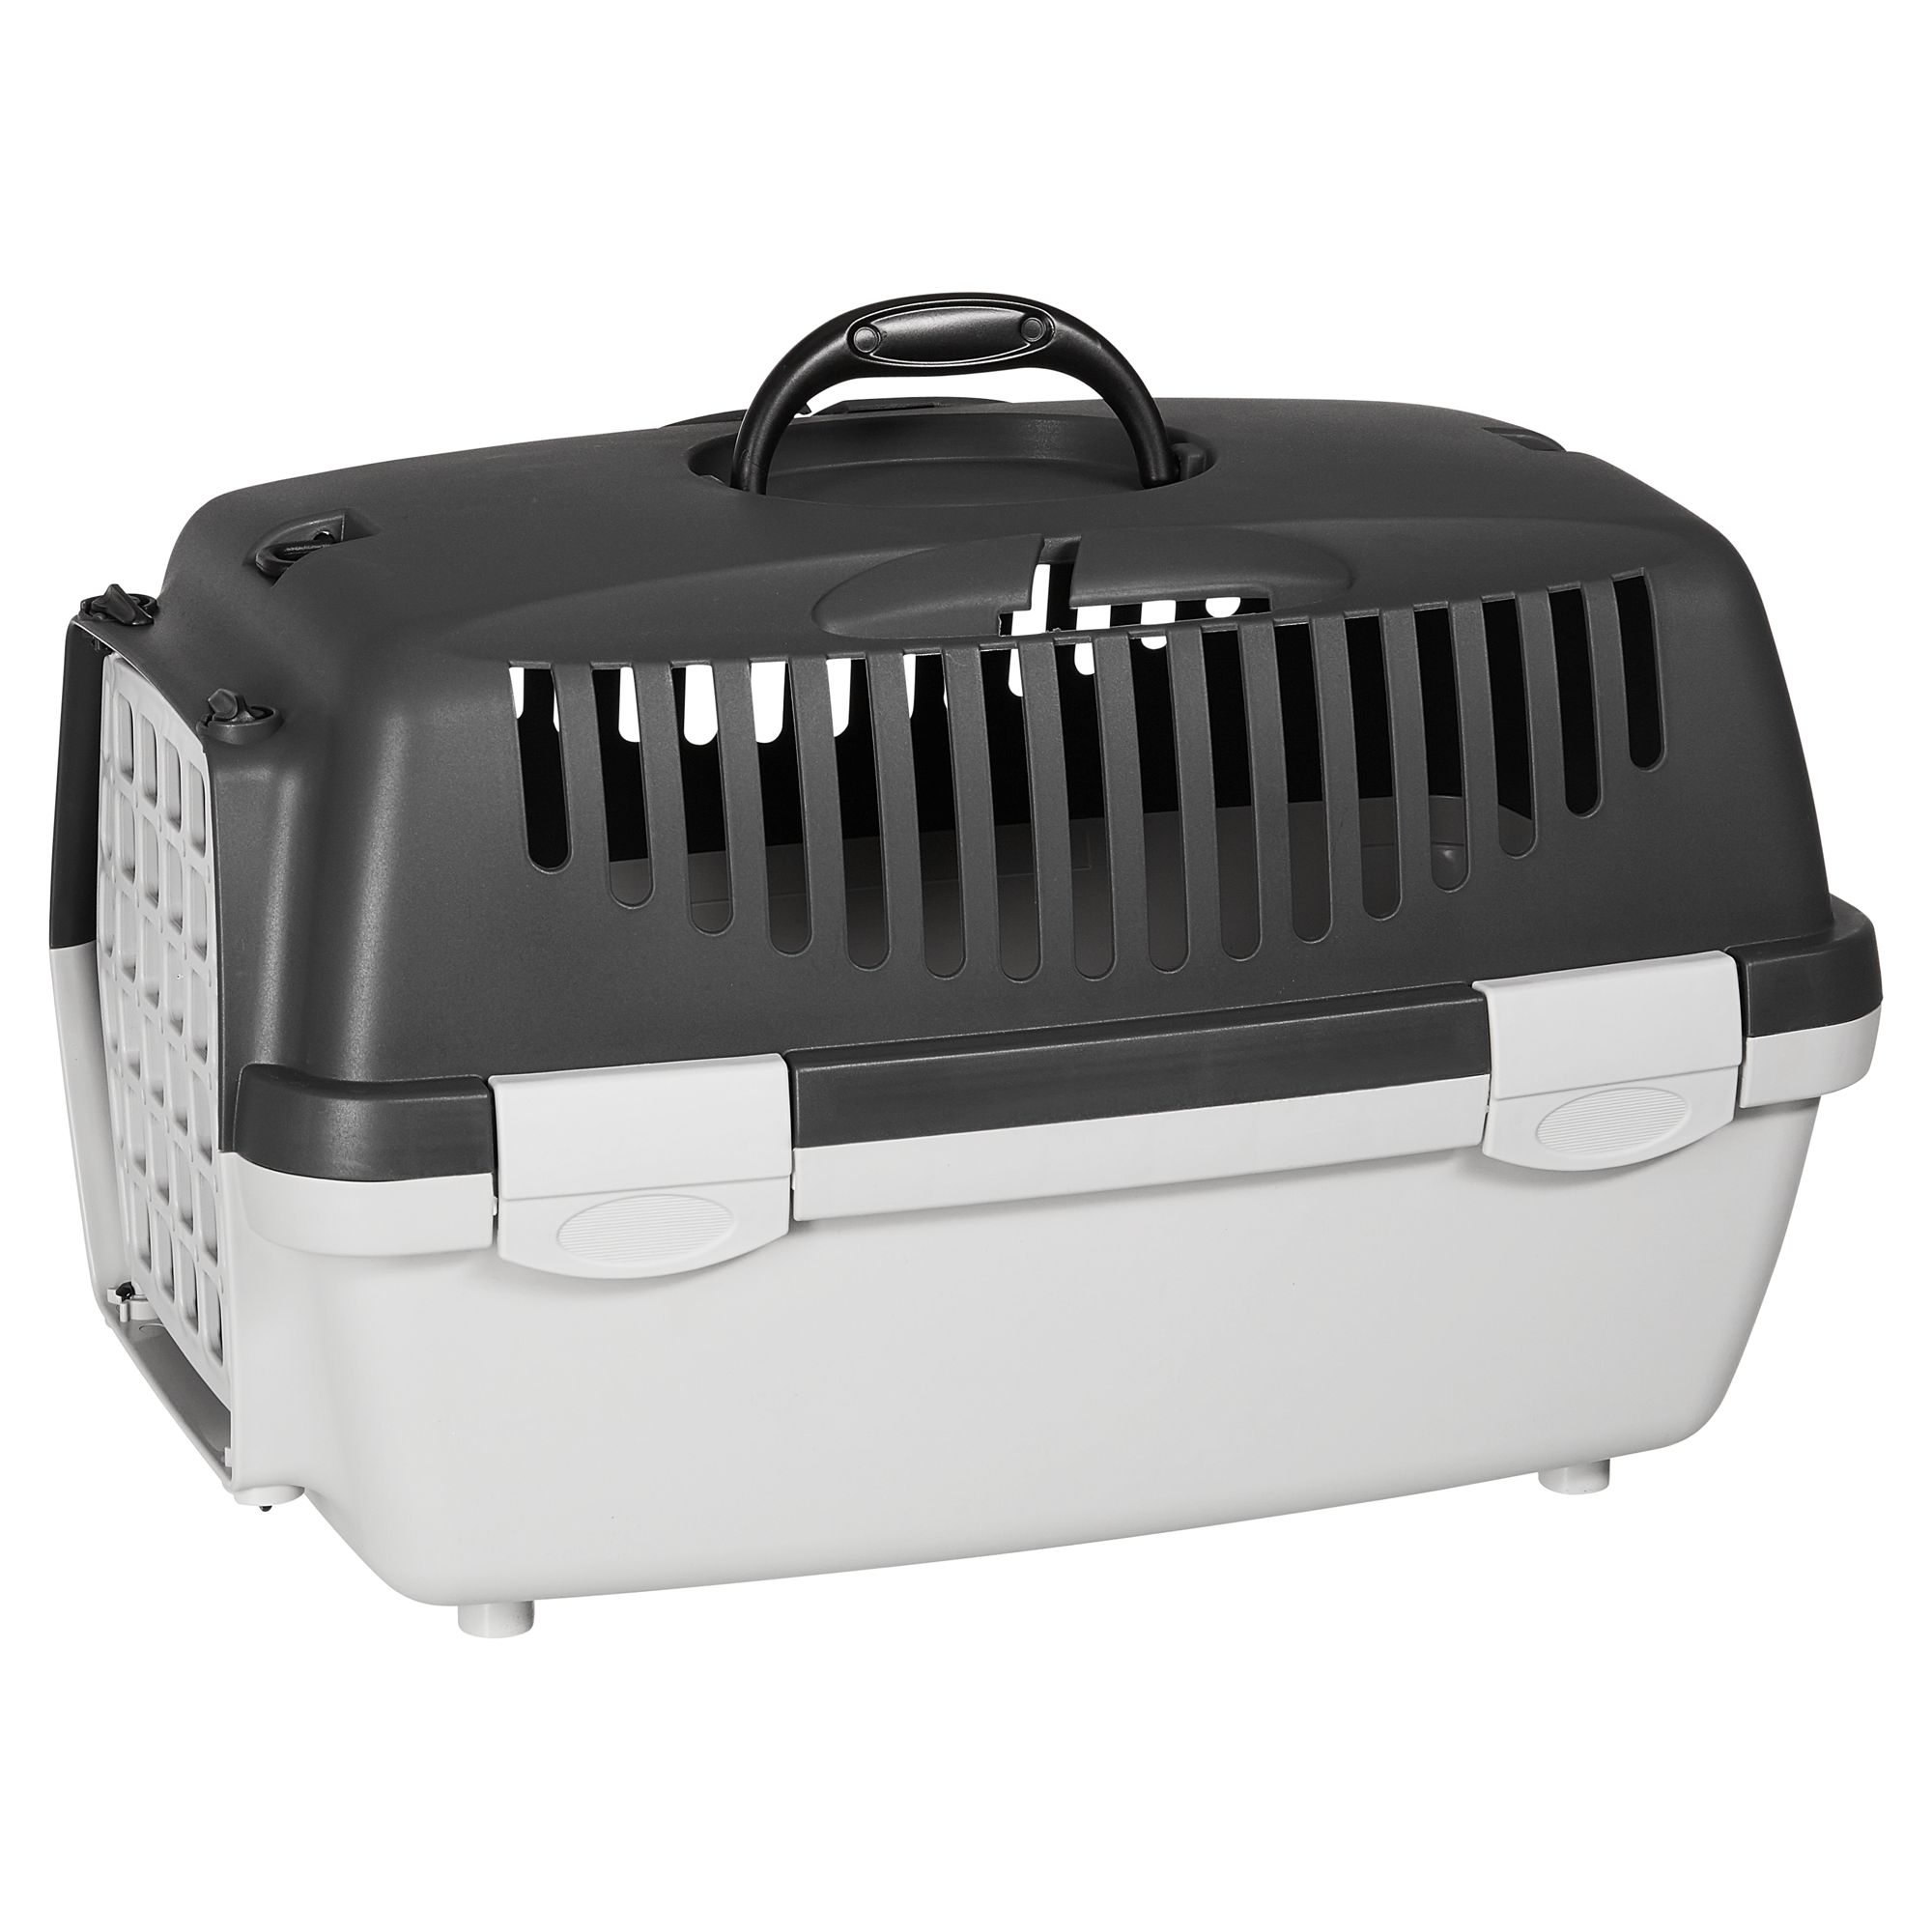 Transportbox für Haustiere Grau und Schwarz 48x32x31 cm PP 48 x 32 x 31 cm  online kaufen 